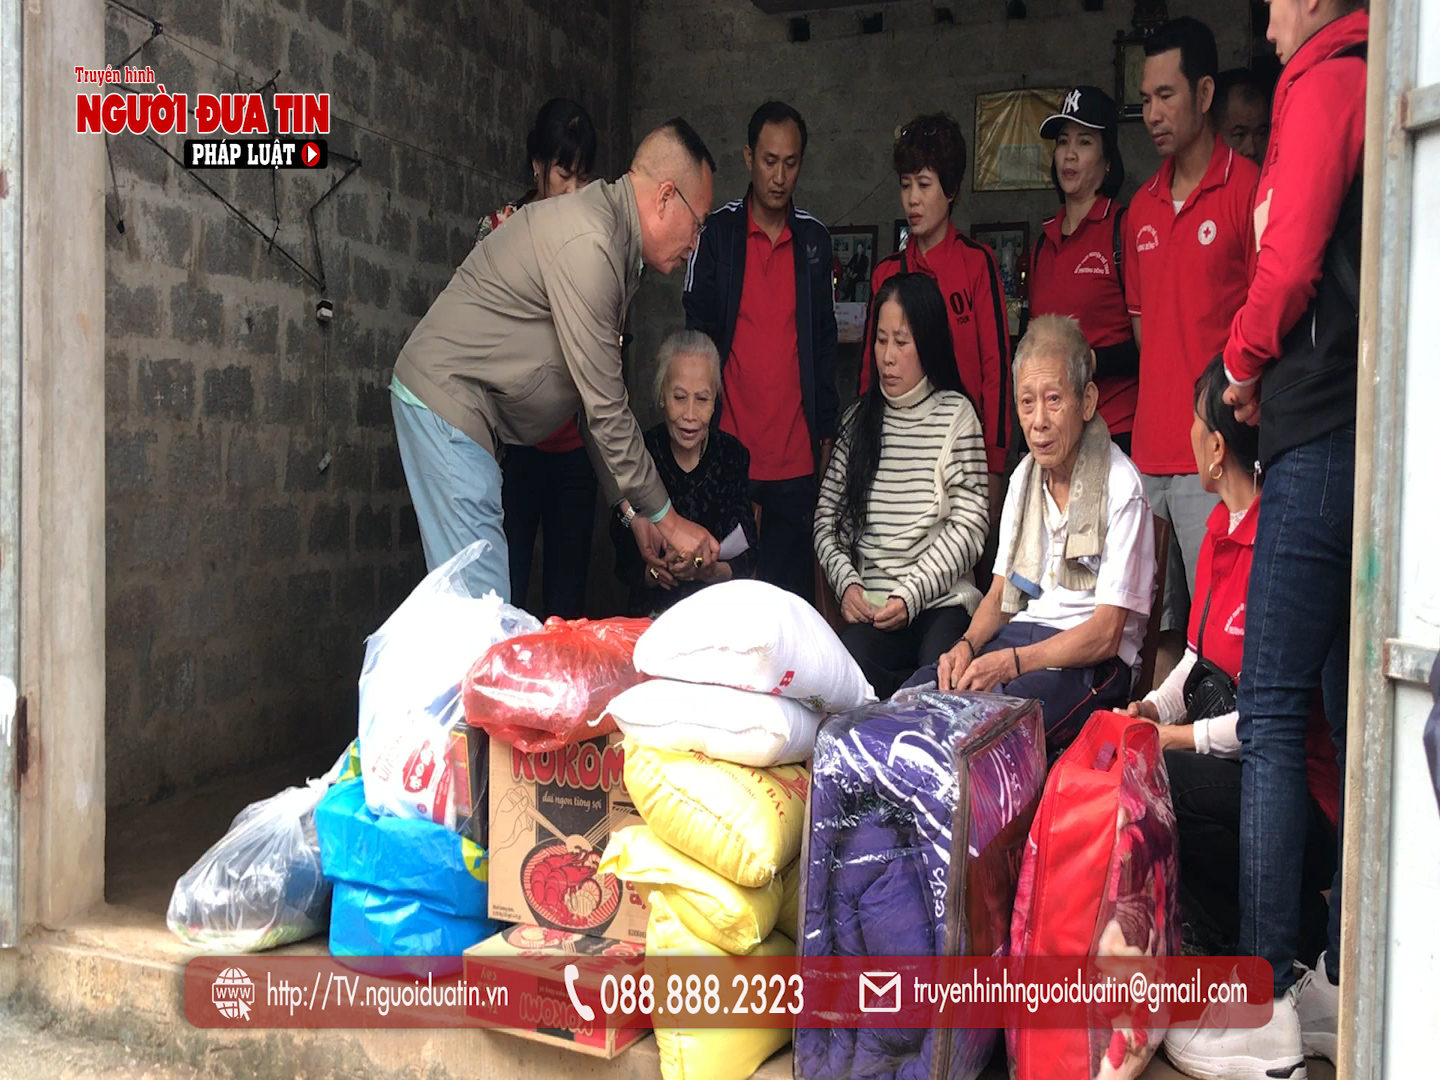 Nhóm thiện nguyện đến tận nhà trao tặng nhu yếu phẩm cùng tiền mặt, nhằm động viên chia sẻ những gia đình có hoàn cảnh đặc biệt khó khăn ở TT Phong Nha (Bố trạch)